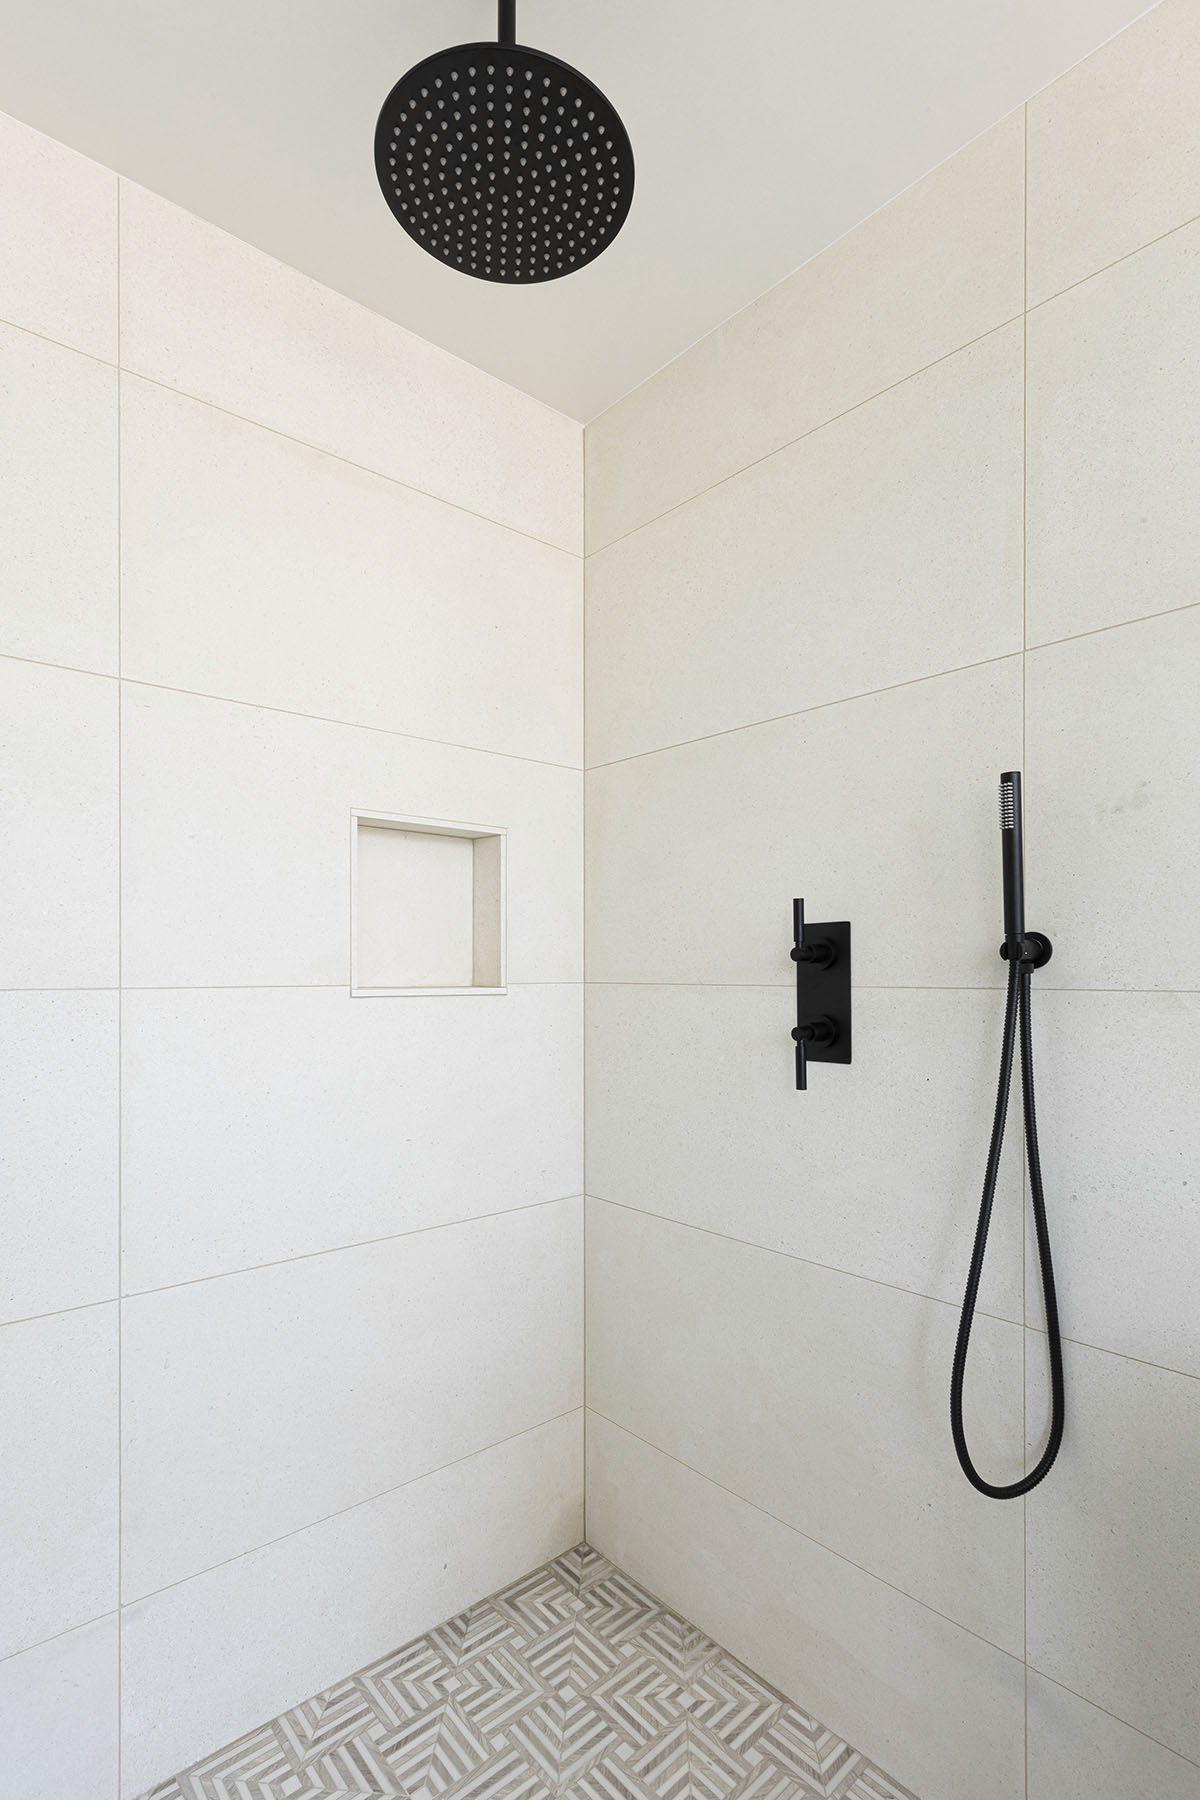 Capri limestone tiles installed in modern shower design